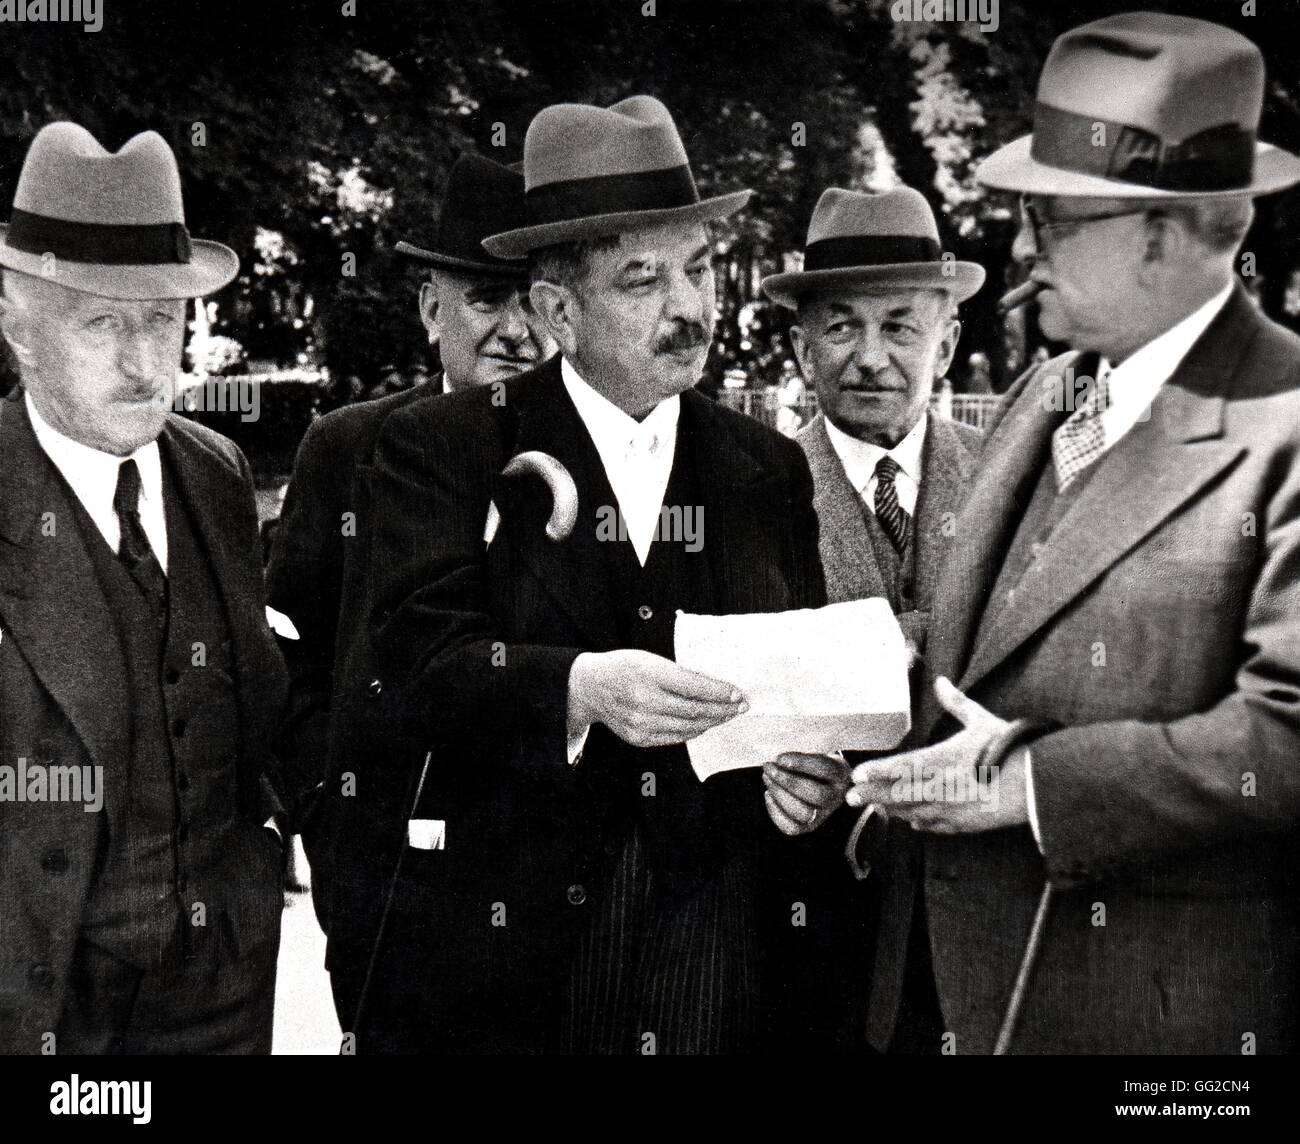 Vichy-Regierung: die neue Gruppe mit, von links nach rechts, Herrn Milan, Francetti, Laval und Borel Juli 1940 Frankreich, zweiten Weltkrieg Krieg Stockfoto